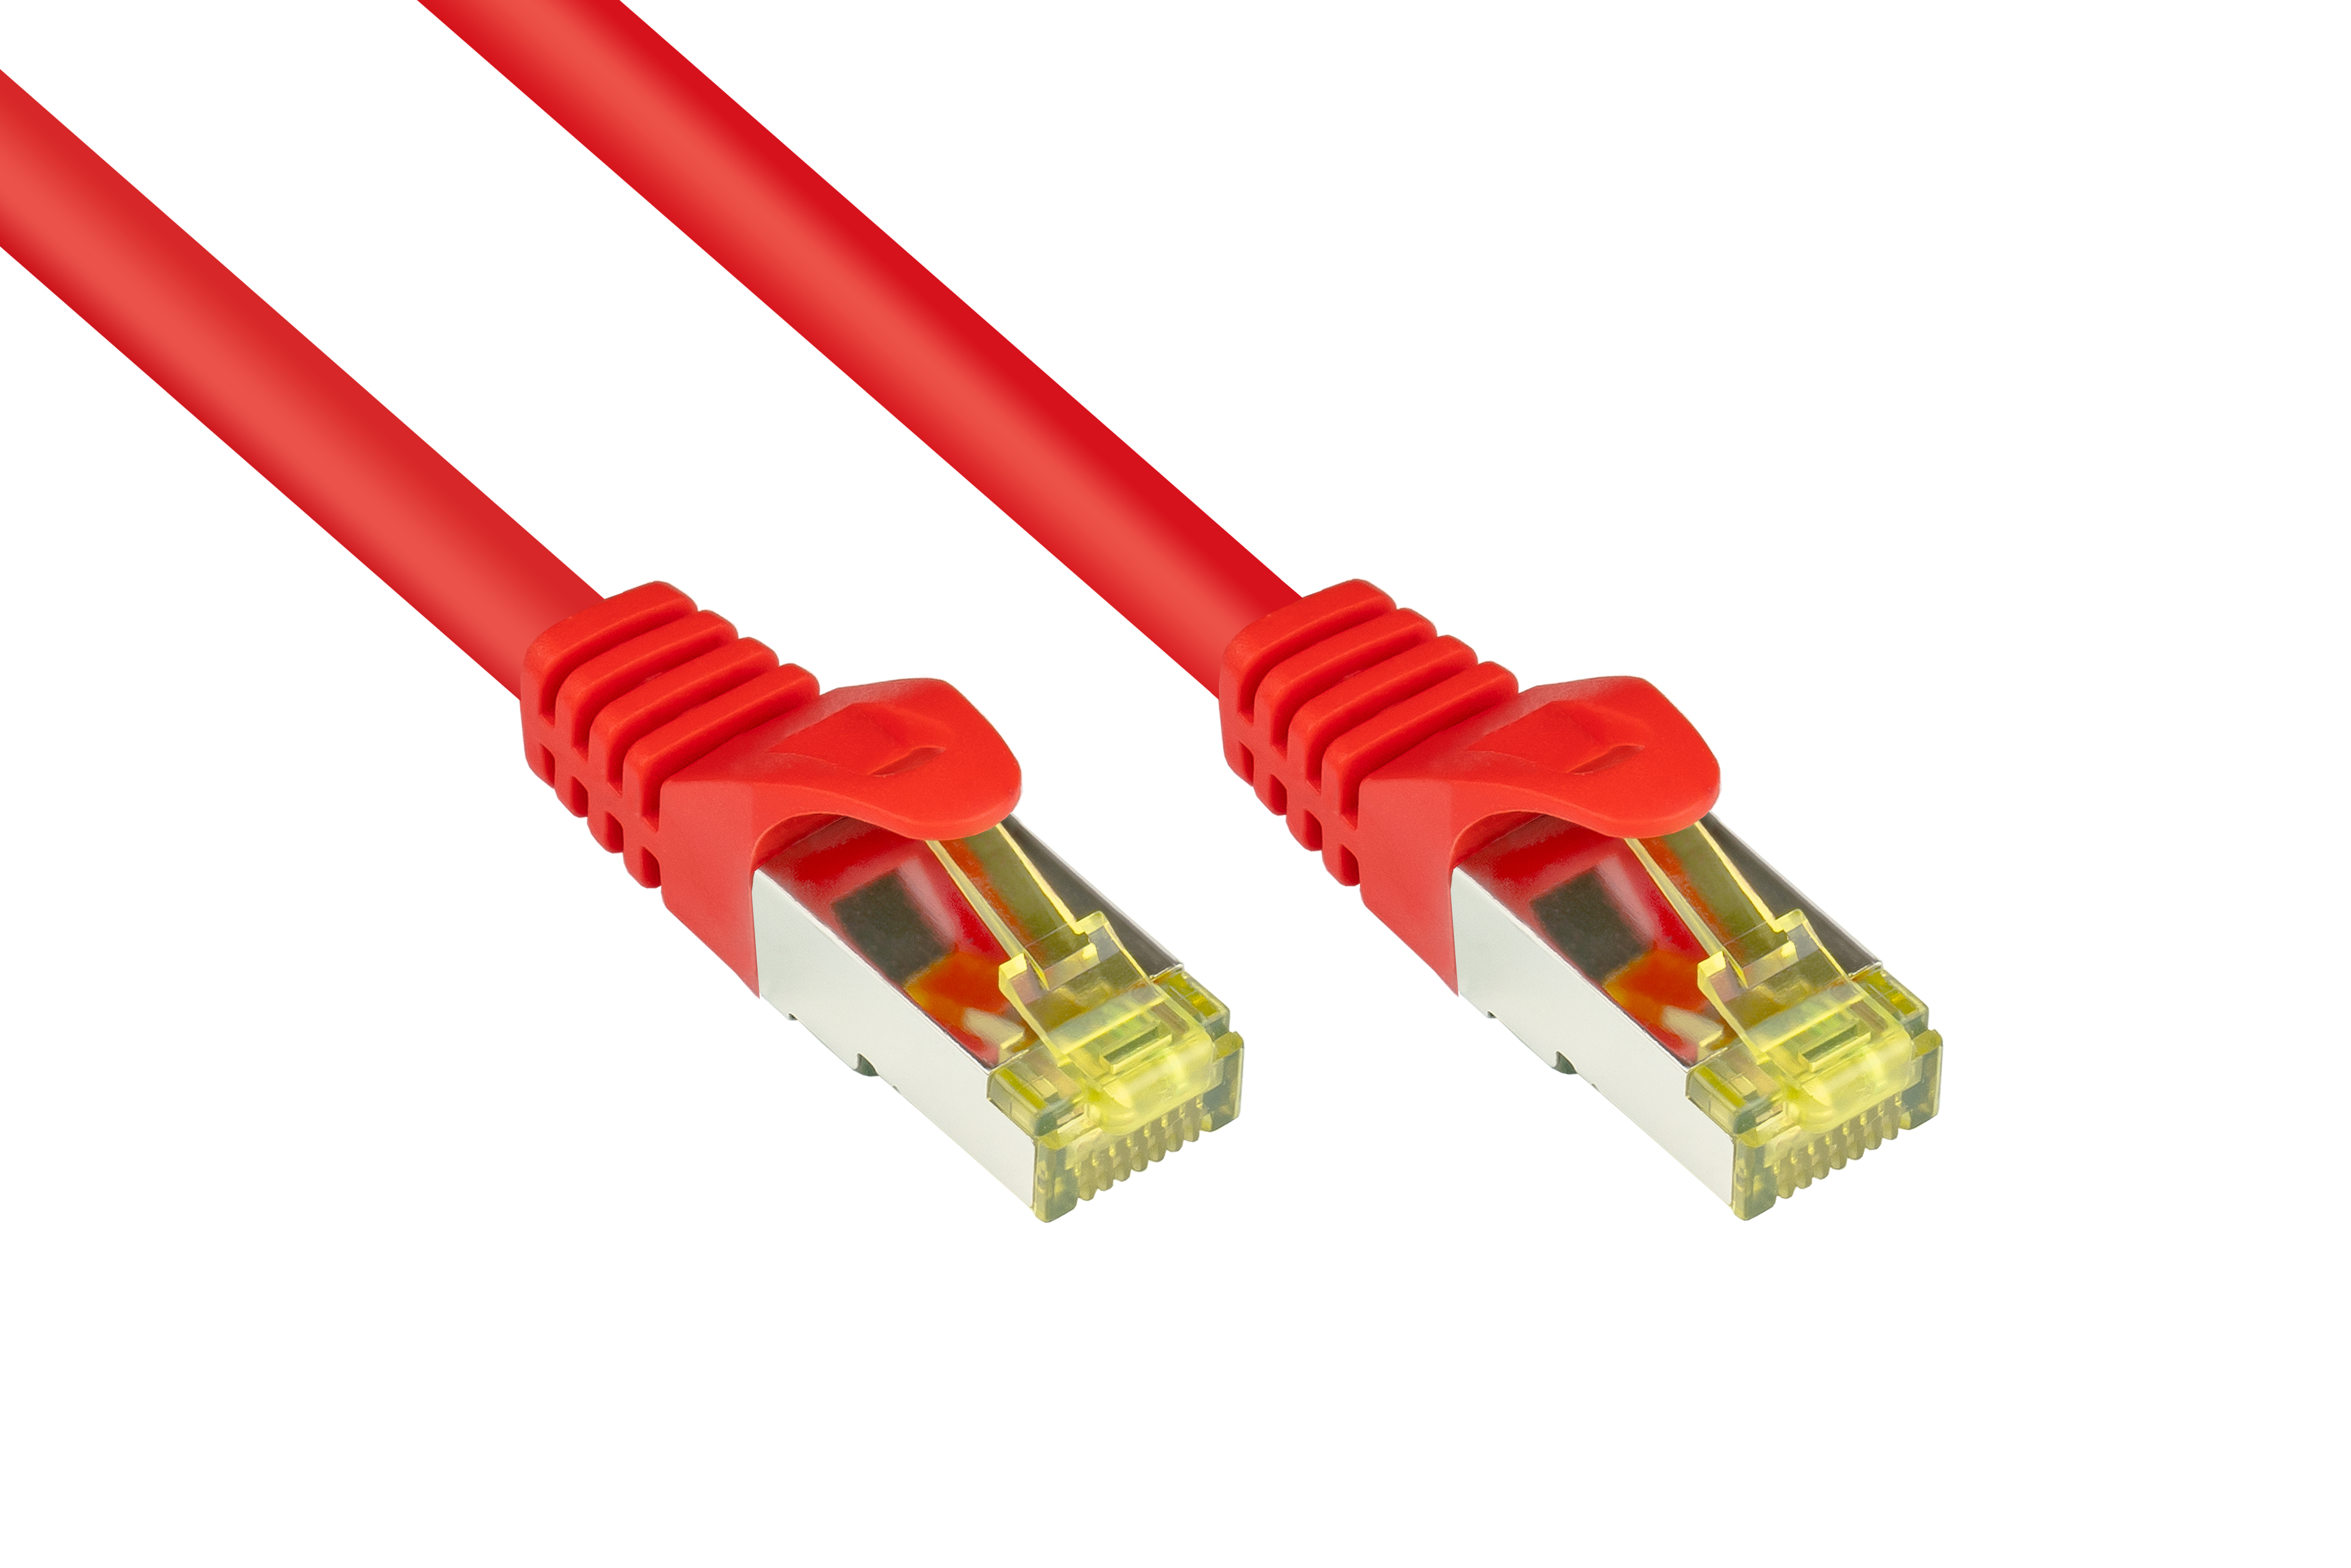 GOOD CONNECTIONS Patchkabel 40 OFC, rot, mit S/FTP, Netzwerkkabel, Rastnasenschutz m (RNS®), halogenfrei